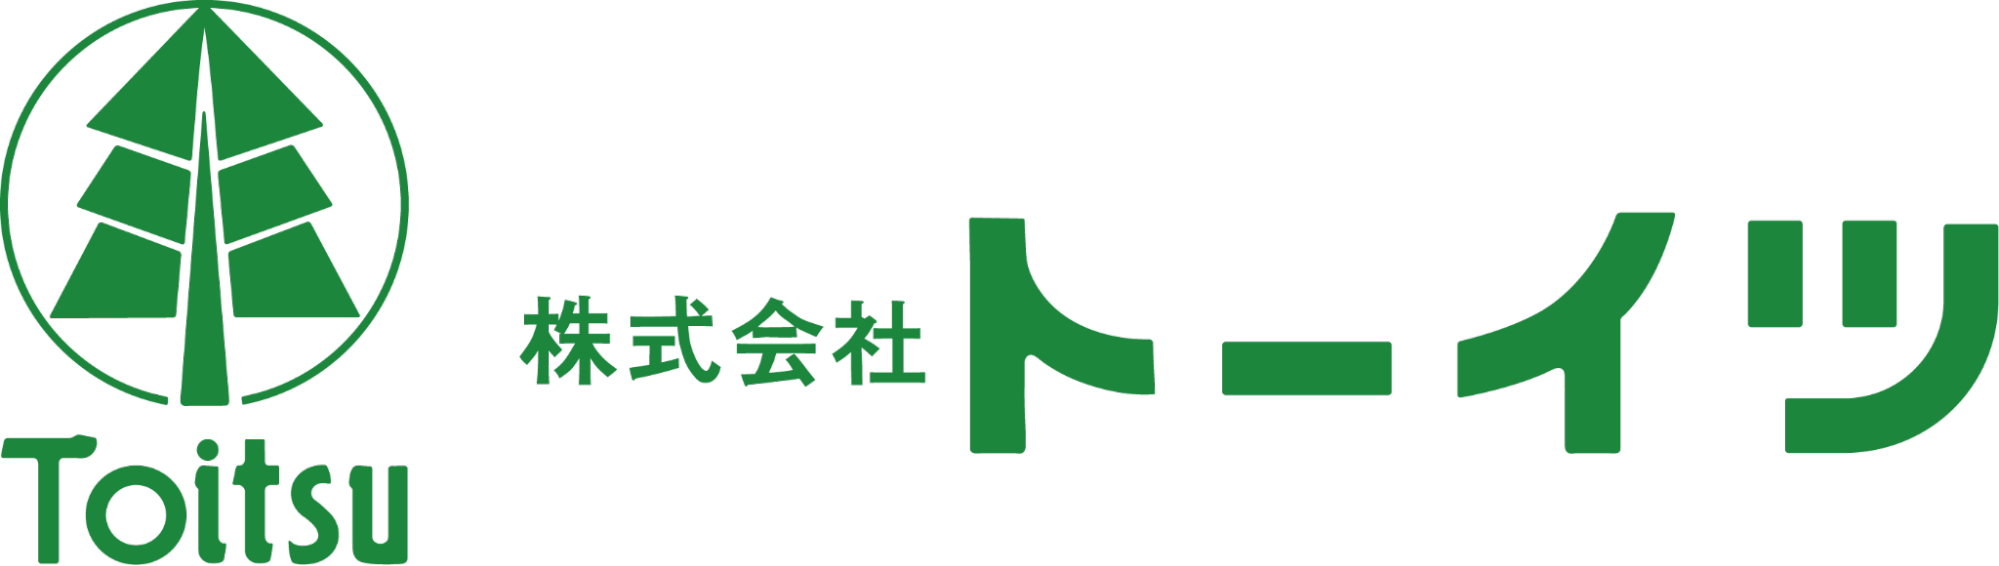 TOITSU-Logo